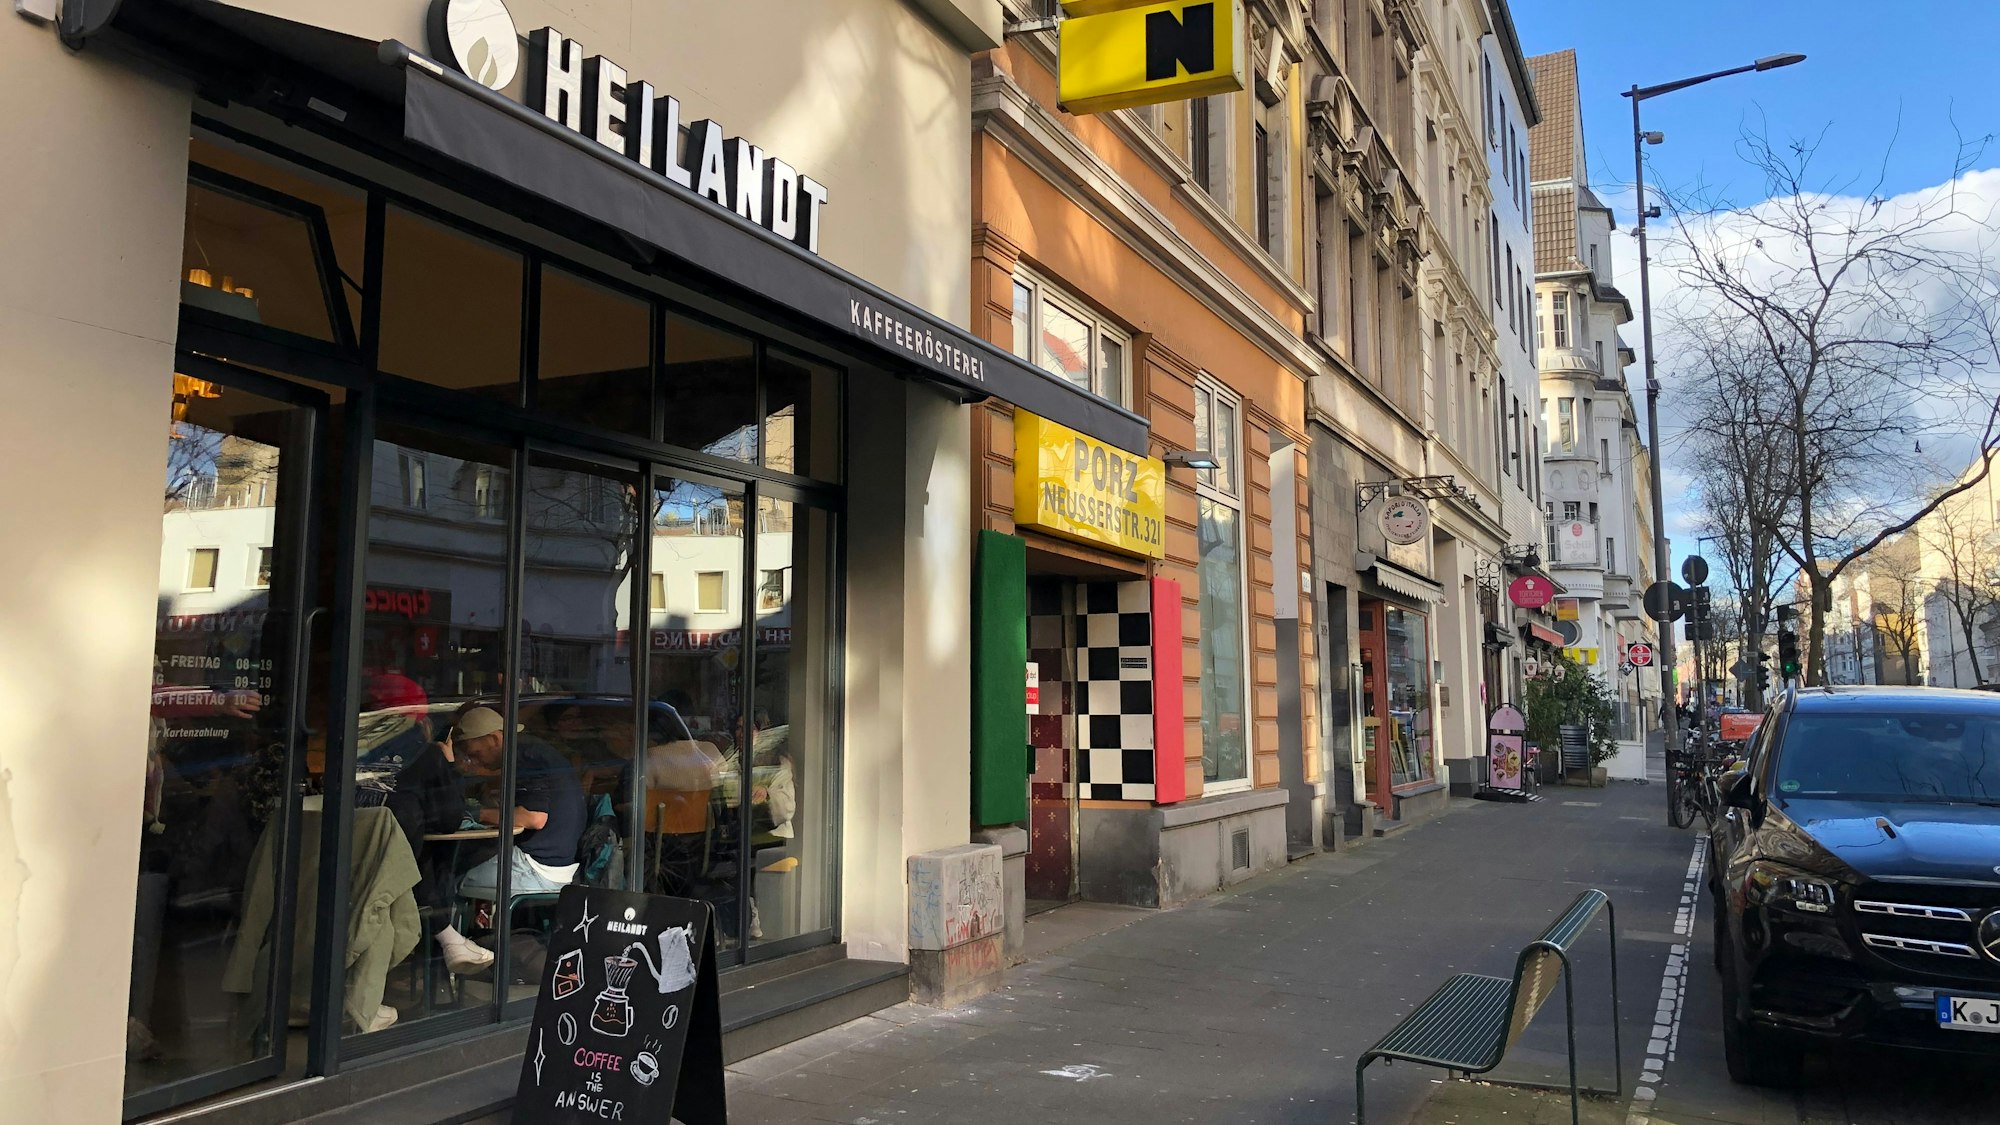 Zuletzt hat unter anderem die Heilandt Rösterei neu auf der Neusser Straße eröffnet – dennoch wünschen sich die Menschen mehr Gastronomie.